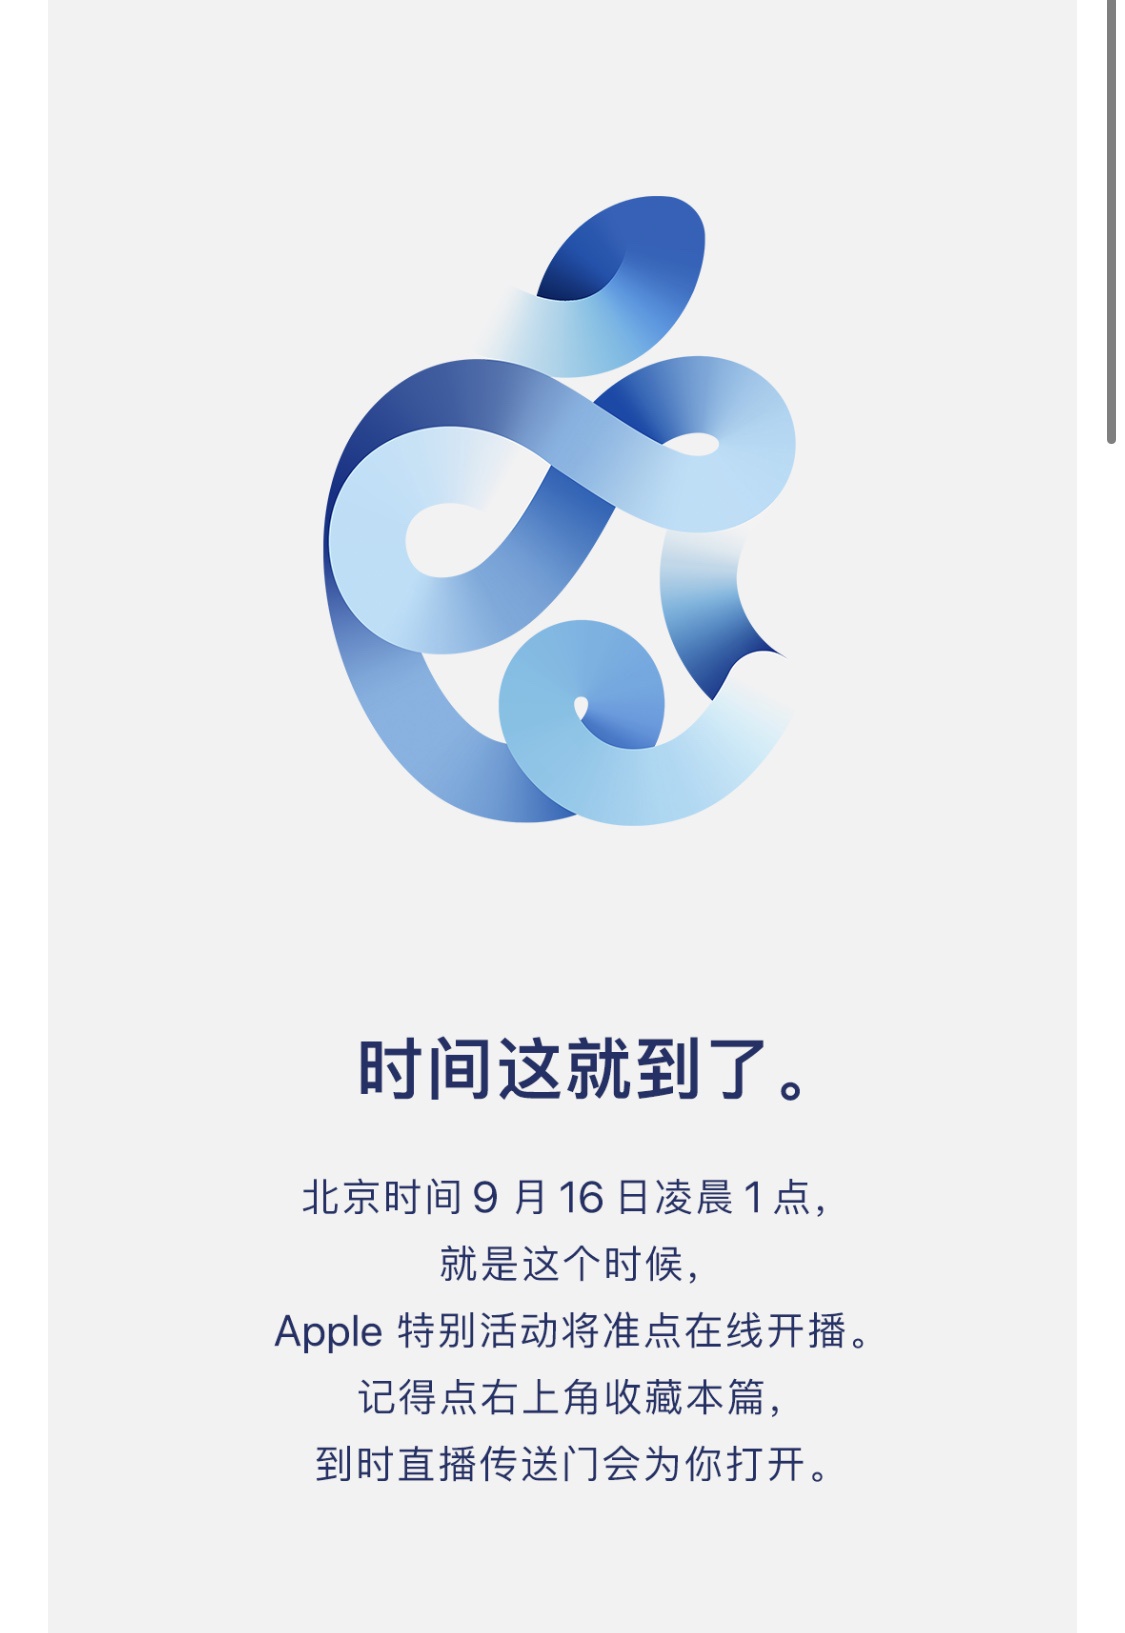 苹果将于北京时间9月16日凌晨1点举行发布会 来源：Apple